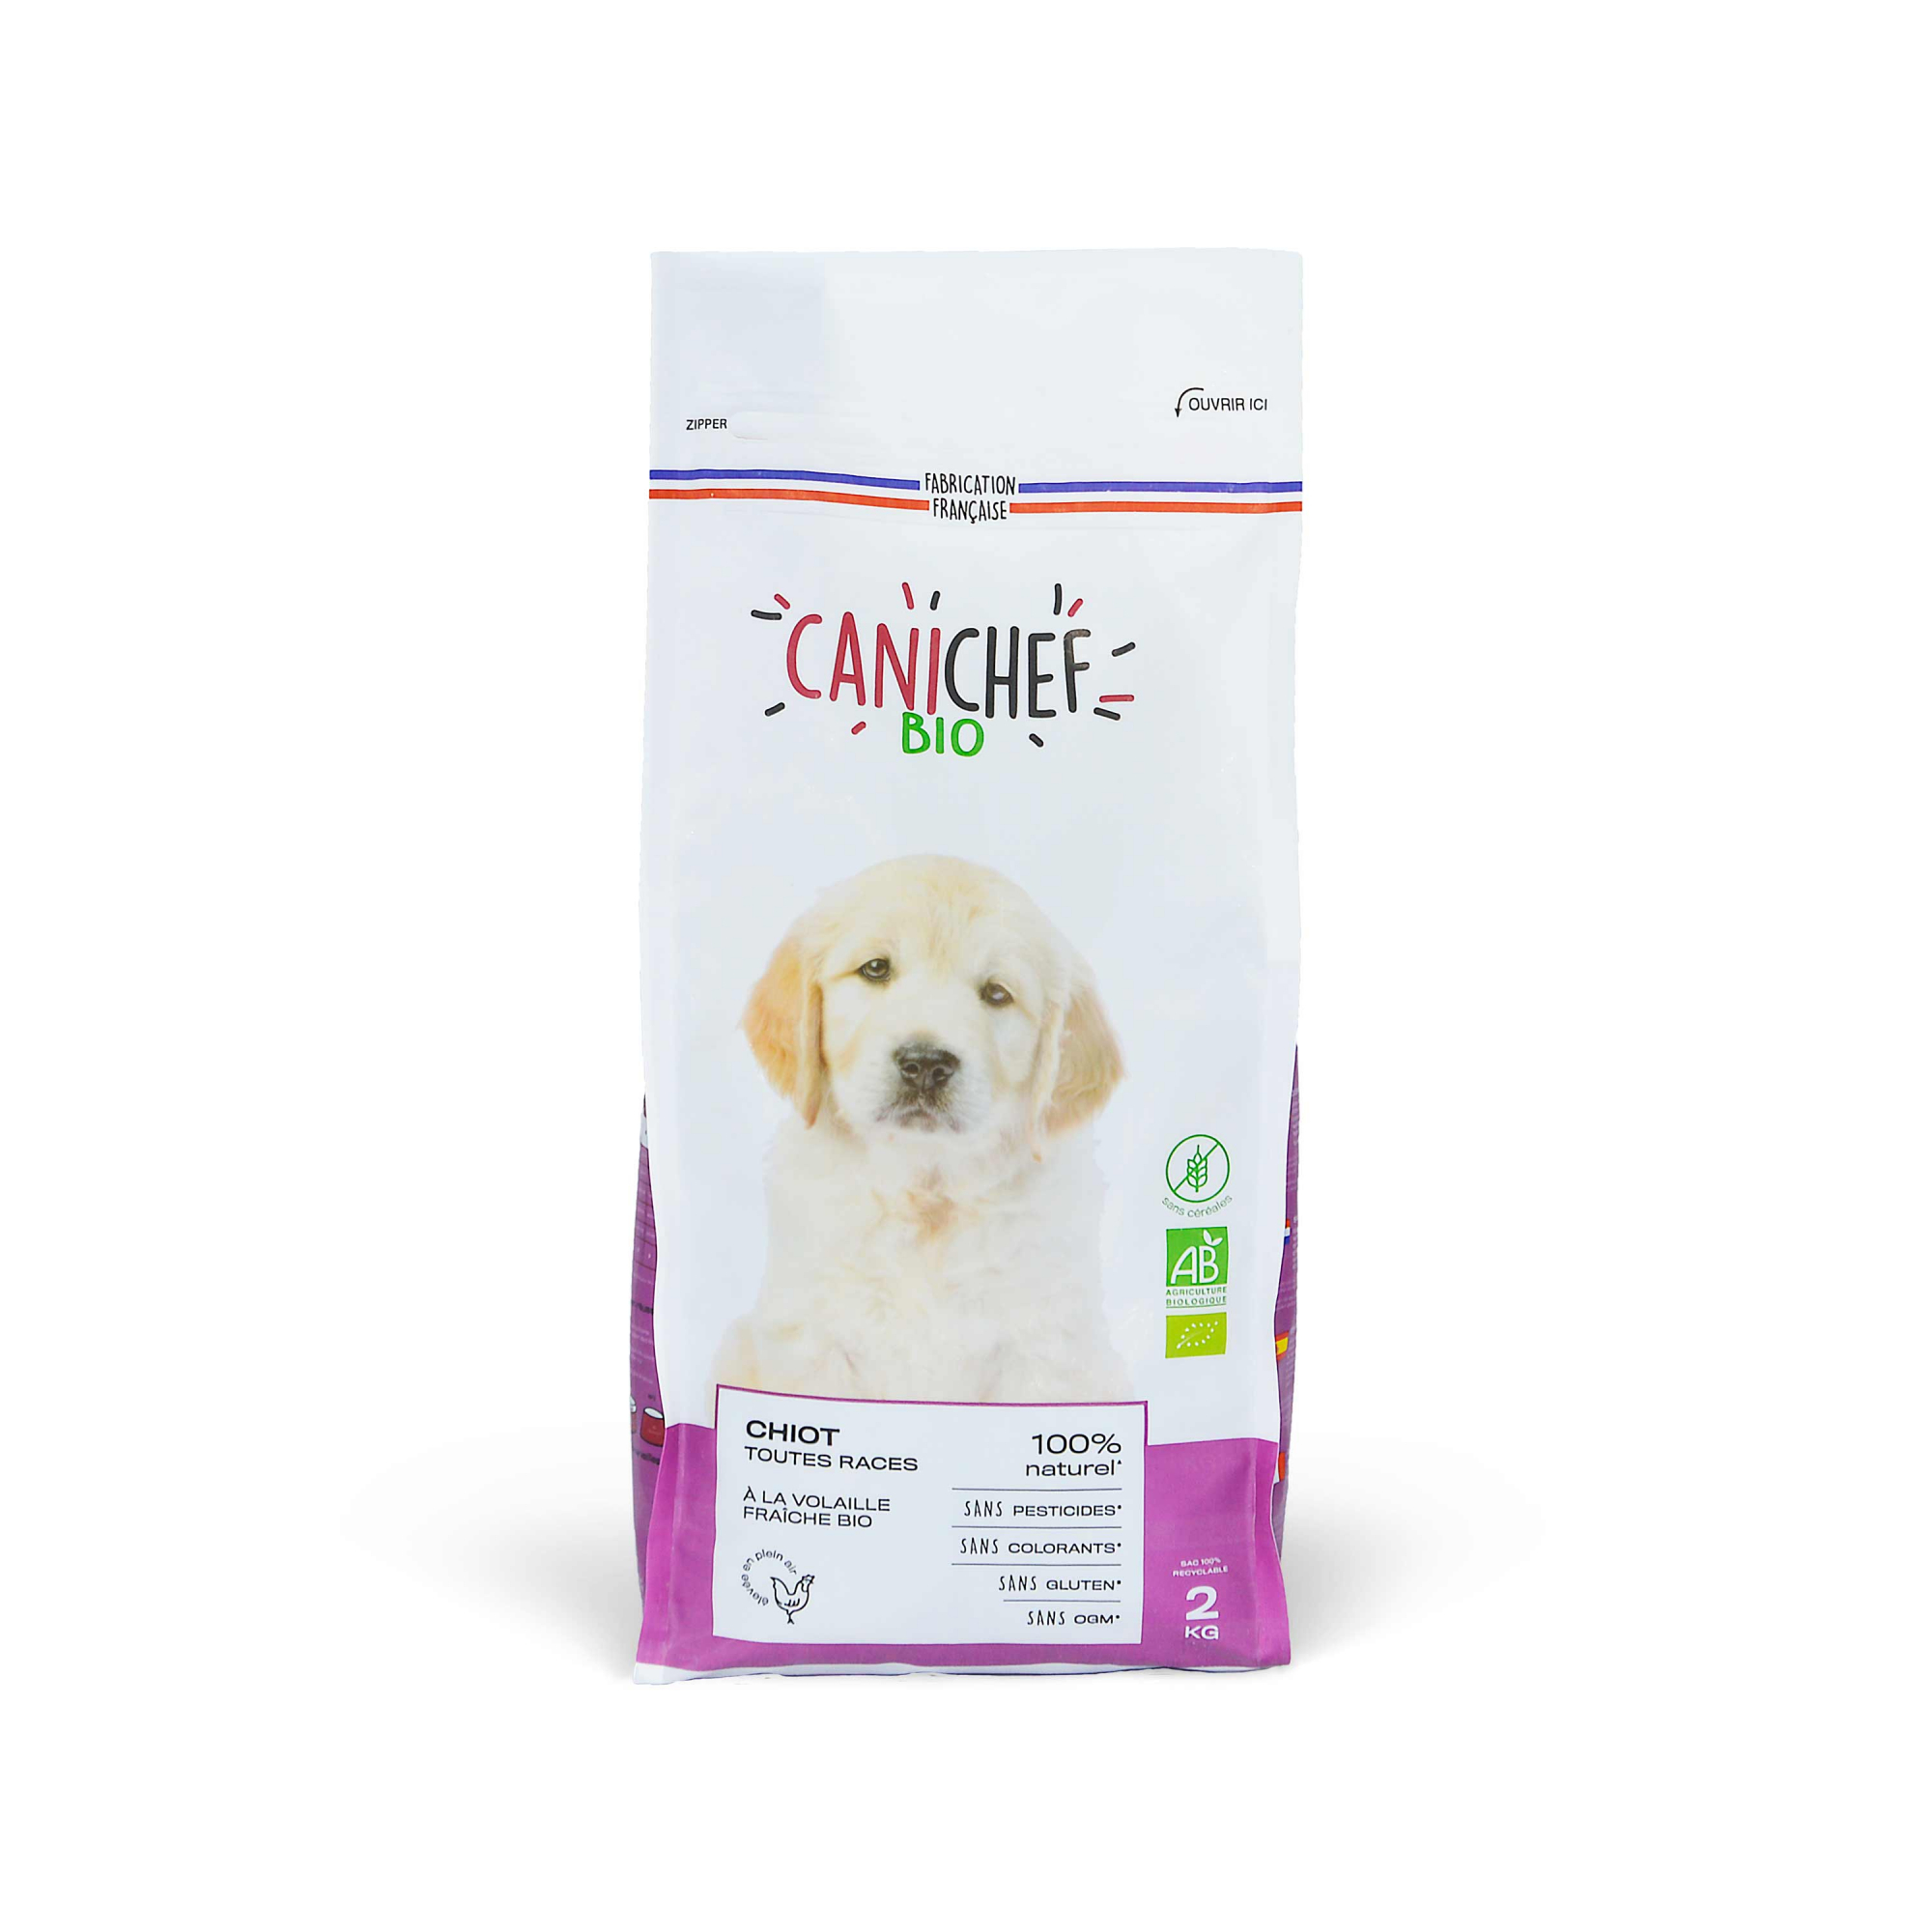 CANICHEF BIO Pienso sin cereales para cachorros